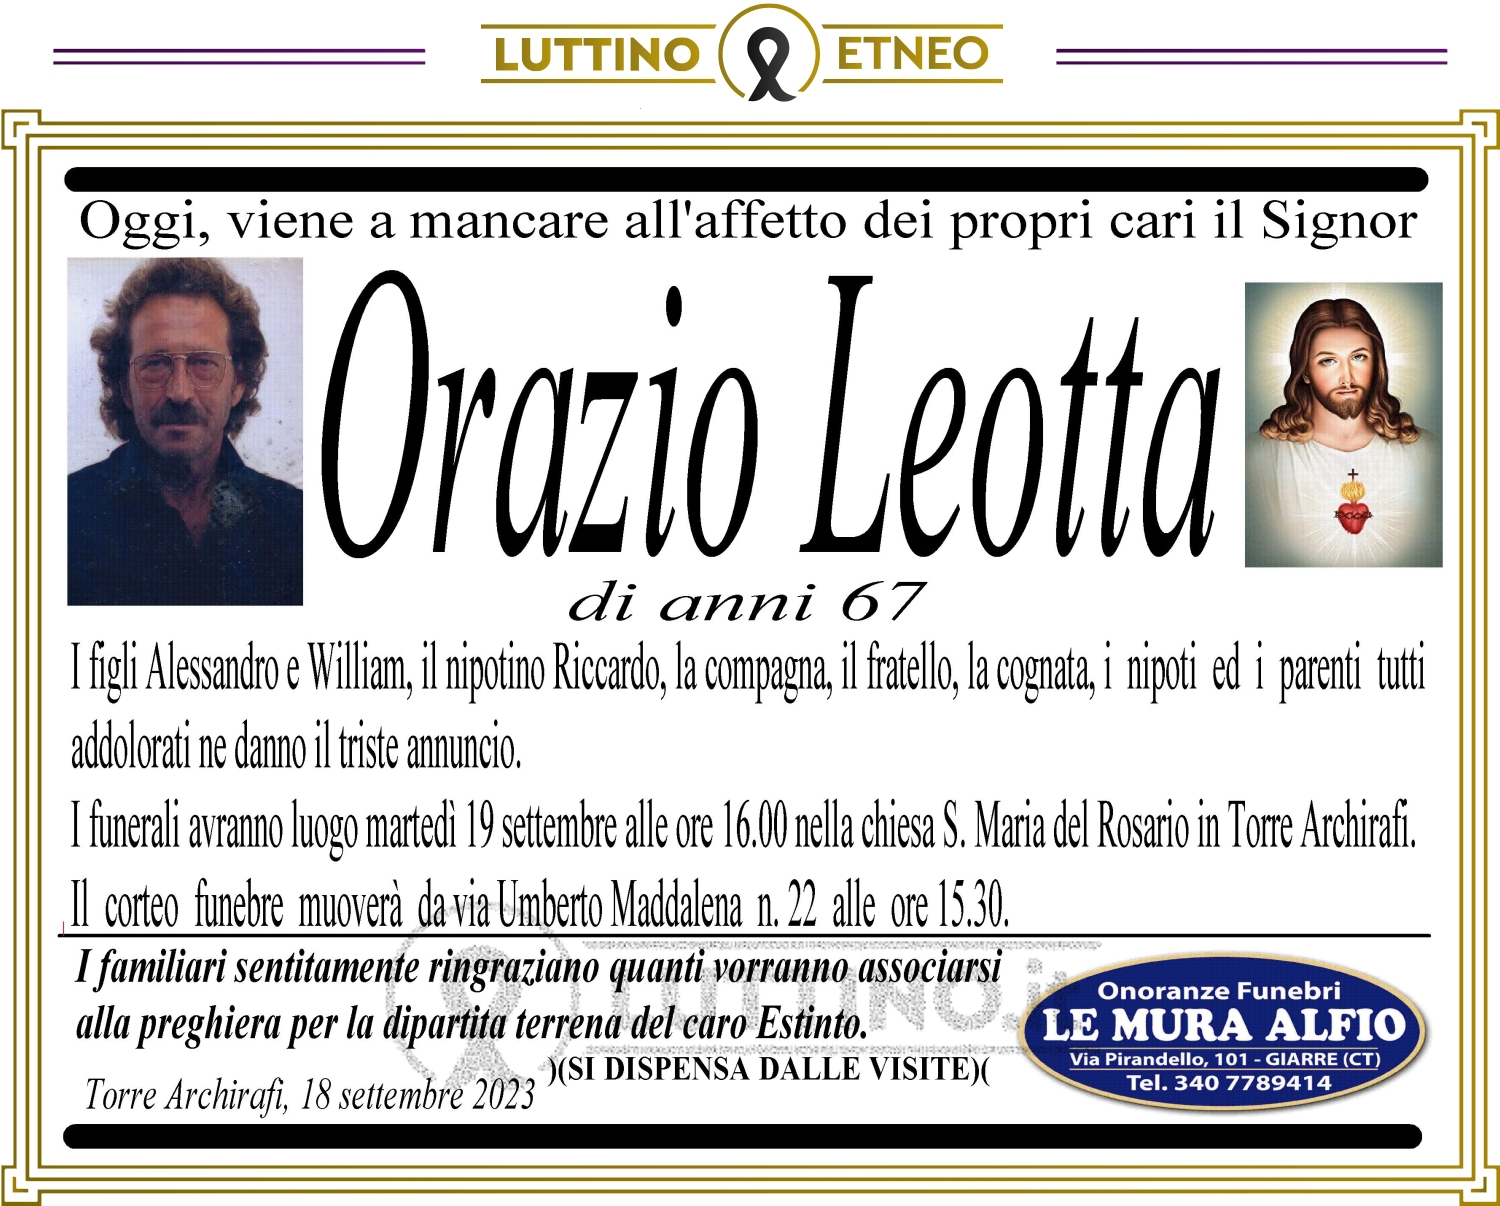 Orazio Leotta